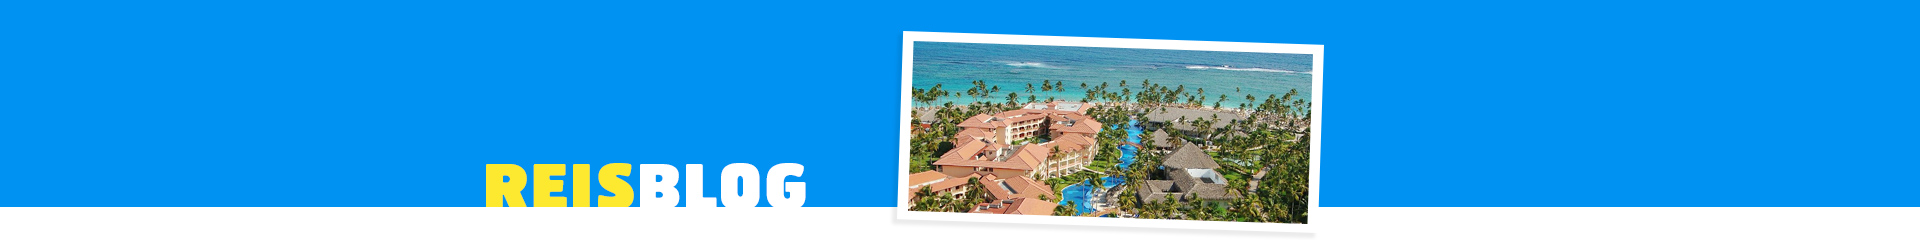 Hotel Majestic colanial Punta Cana, met vakantiehuizen in het groen en zee op de achtergrond